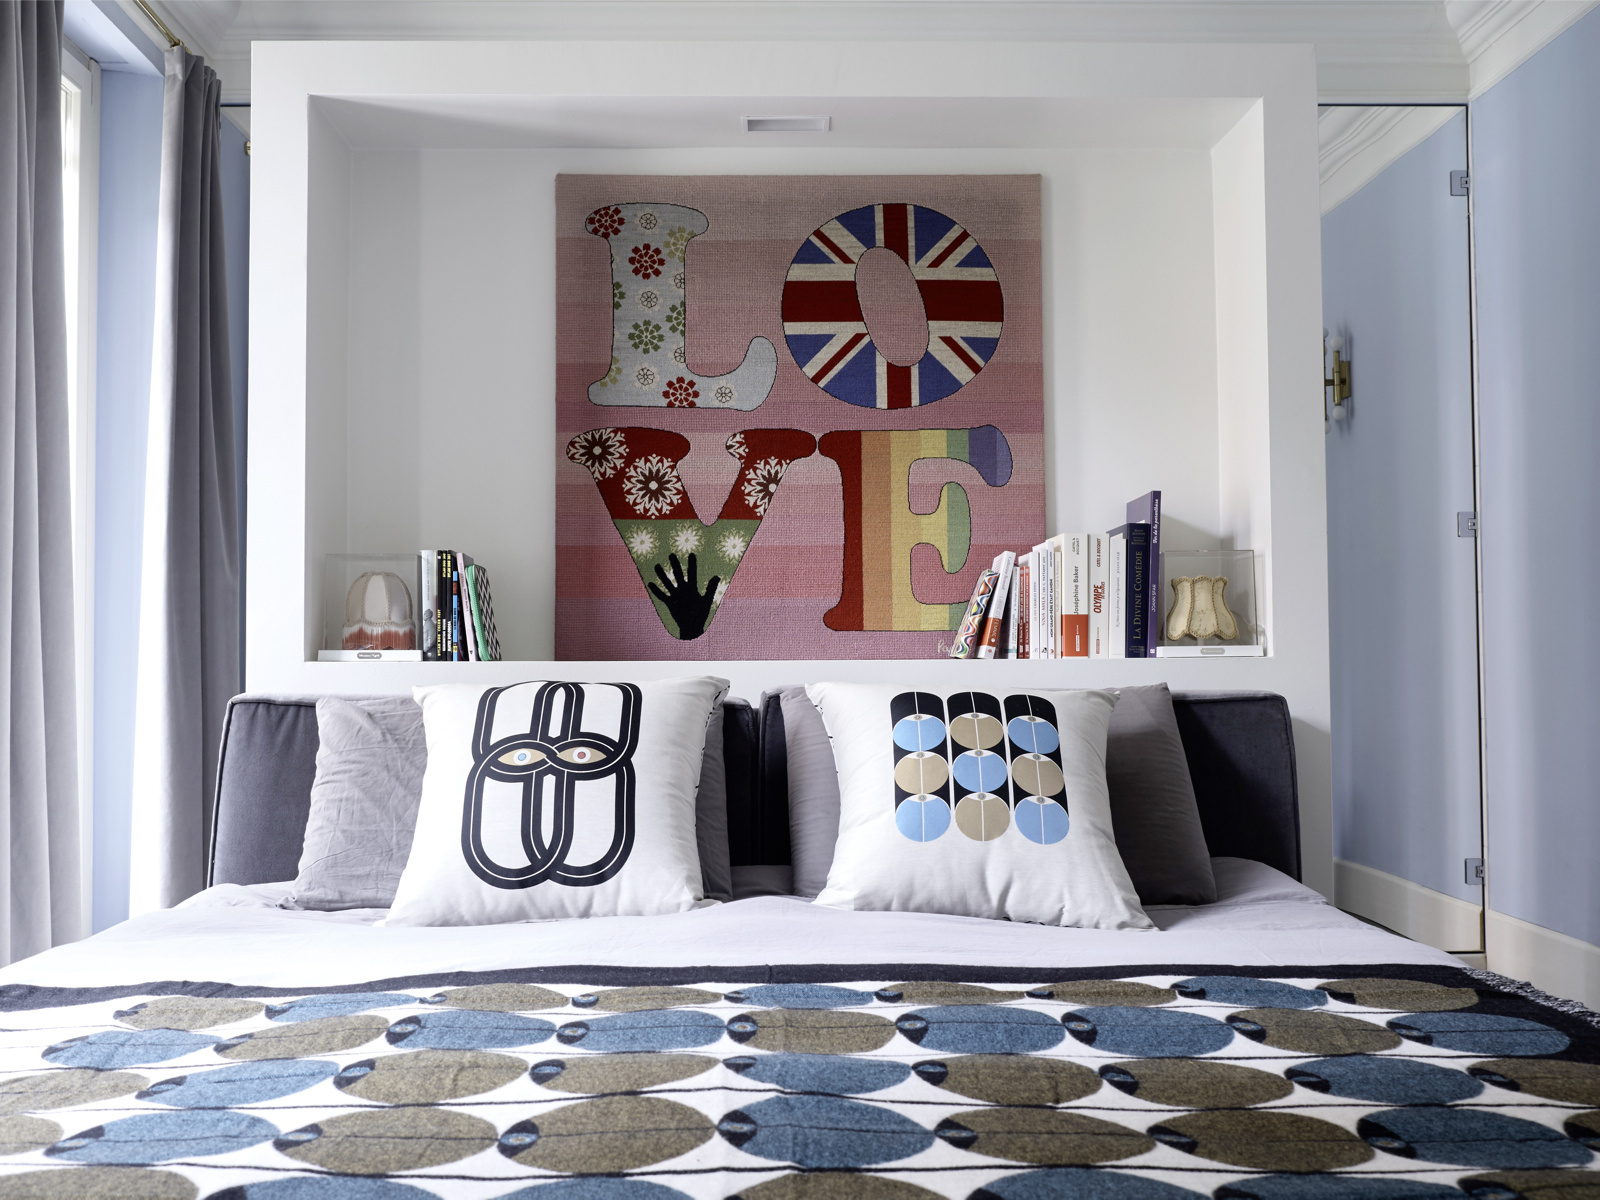 Không chỉ phù hợp với những căn phòng mang phong cách cổ điển, tấm thảm nhẹ nhàng cũng có thể sử dụng để trang trí trong không gian hiện đại, chẳng hạn như thảm thêu chữ LOVE nổi bật ở hốc tường đầu giường này.